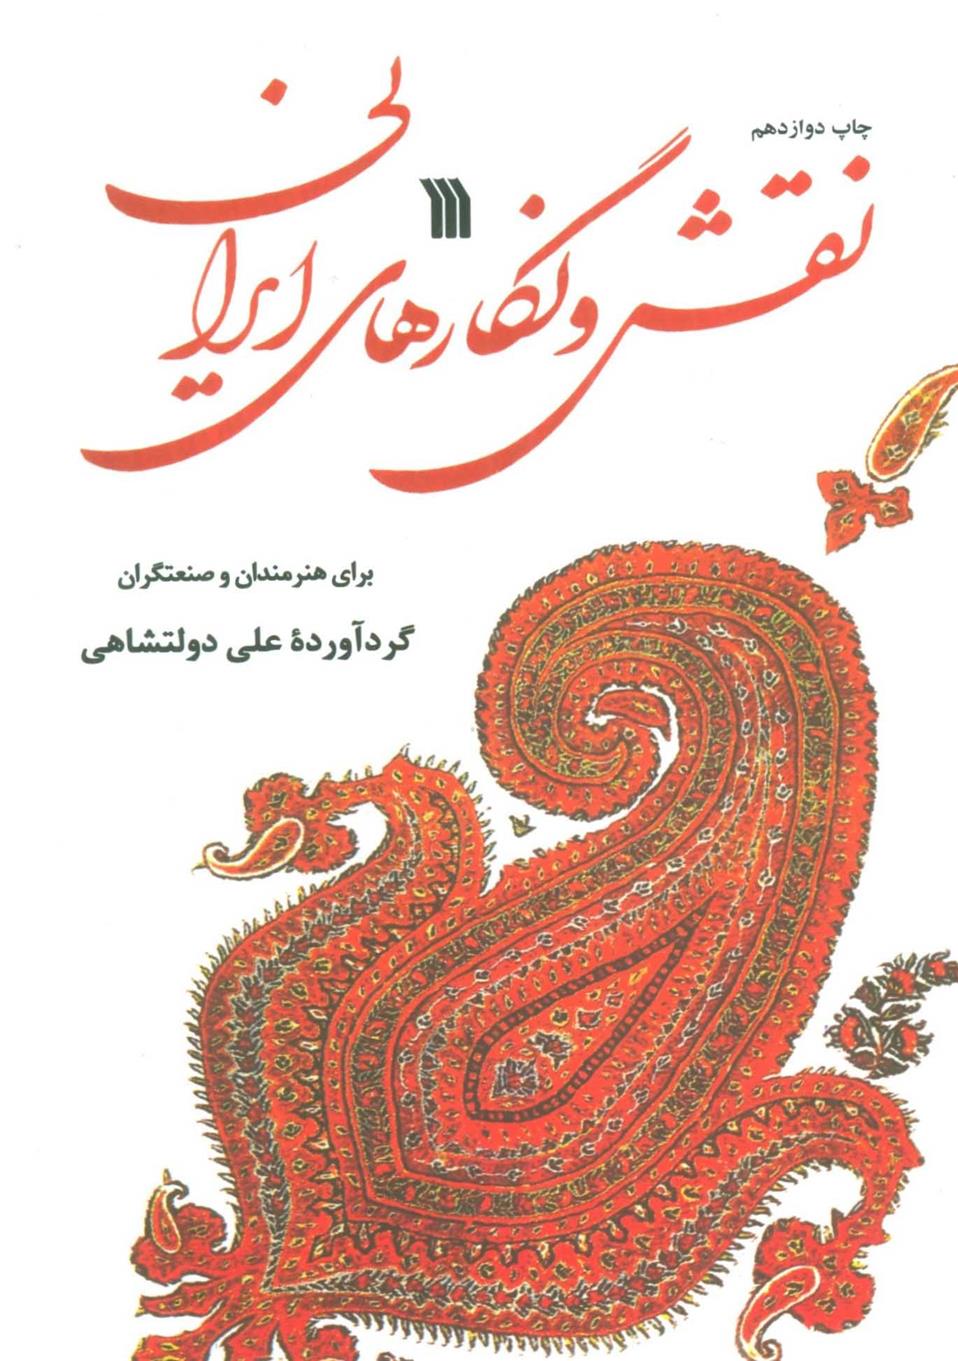 کتاب نقش و نگارهای ایرانی;